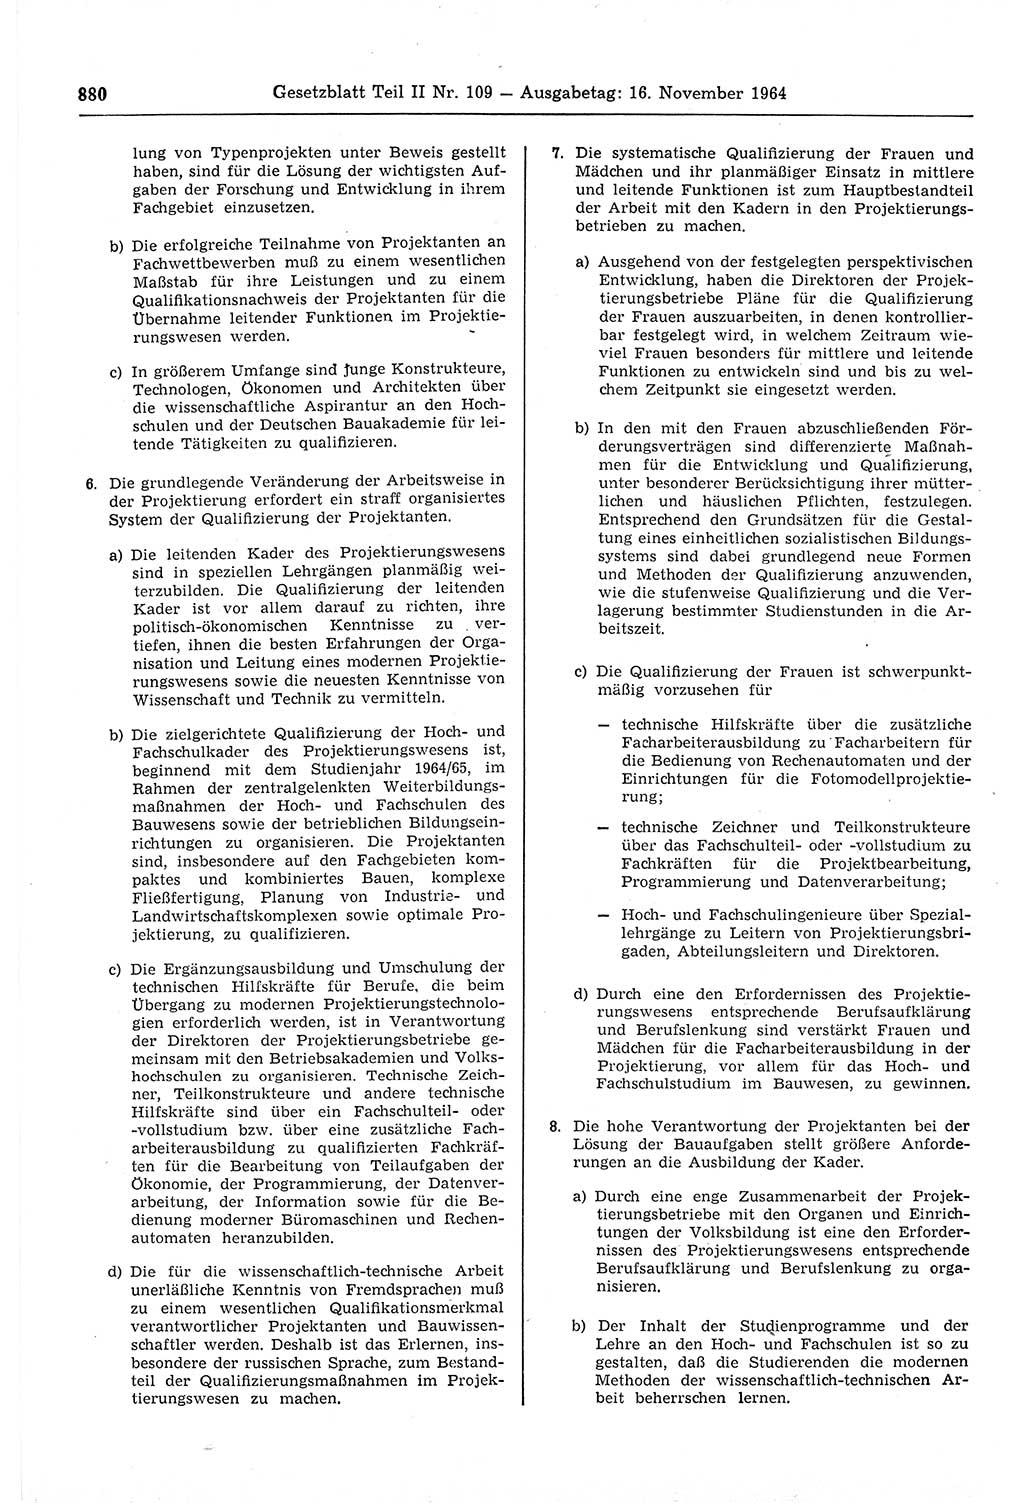 Gesetzblatt (GBl.) der Deutschen Demokratischen Republik (DDR) Teil ⅠⅠ 1964, Seite 880 (GBl. DDR ⅠⅠ 1964, S. 880)